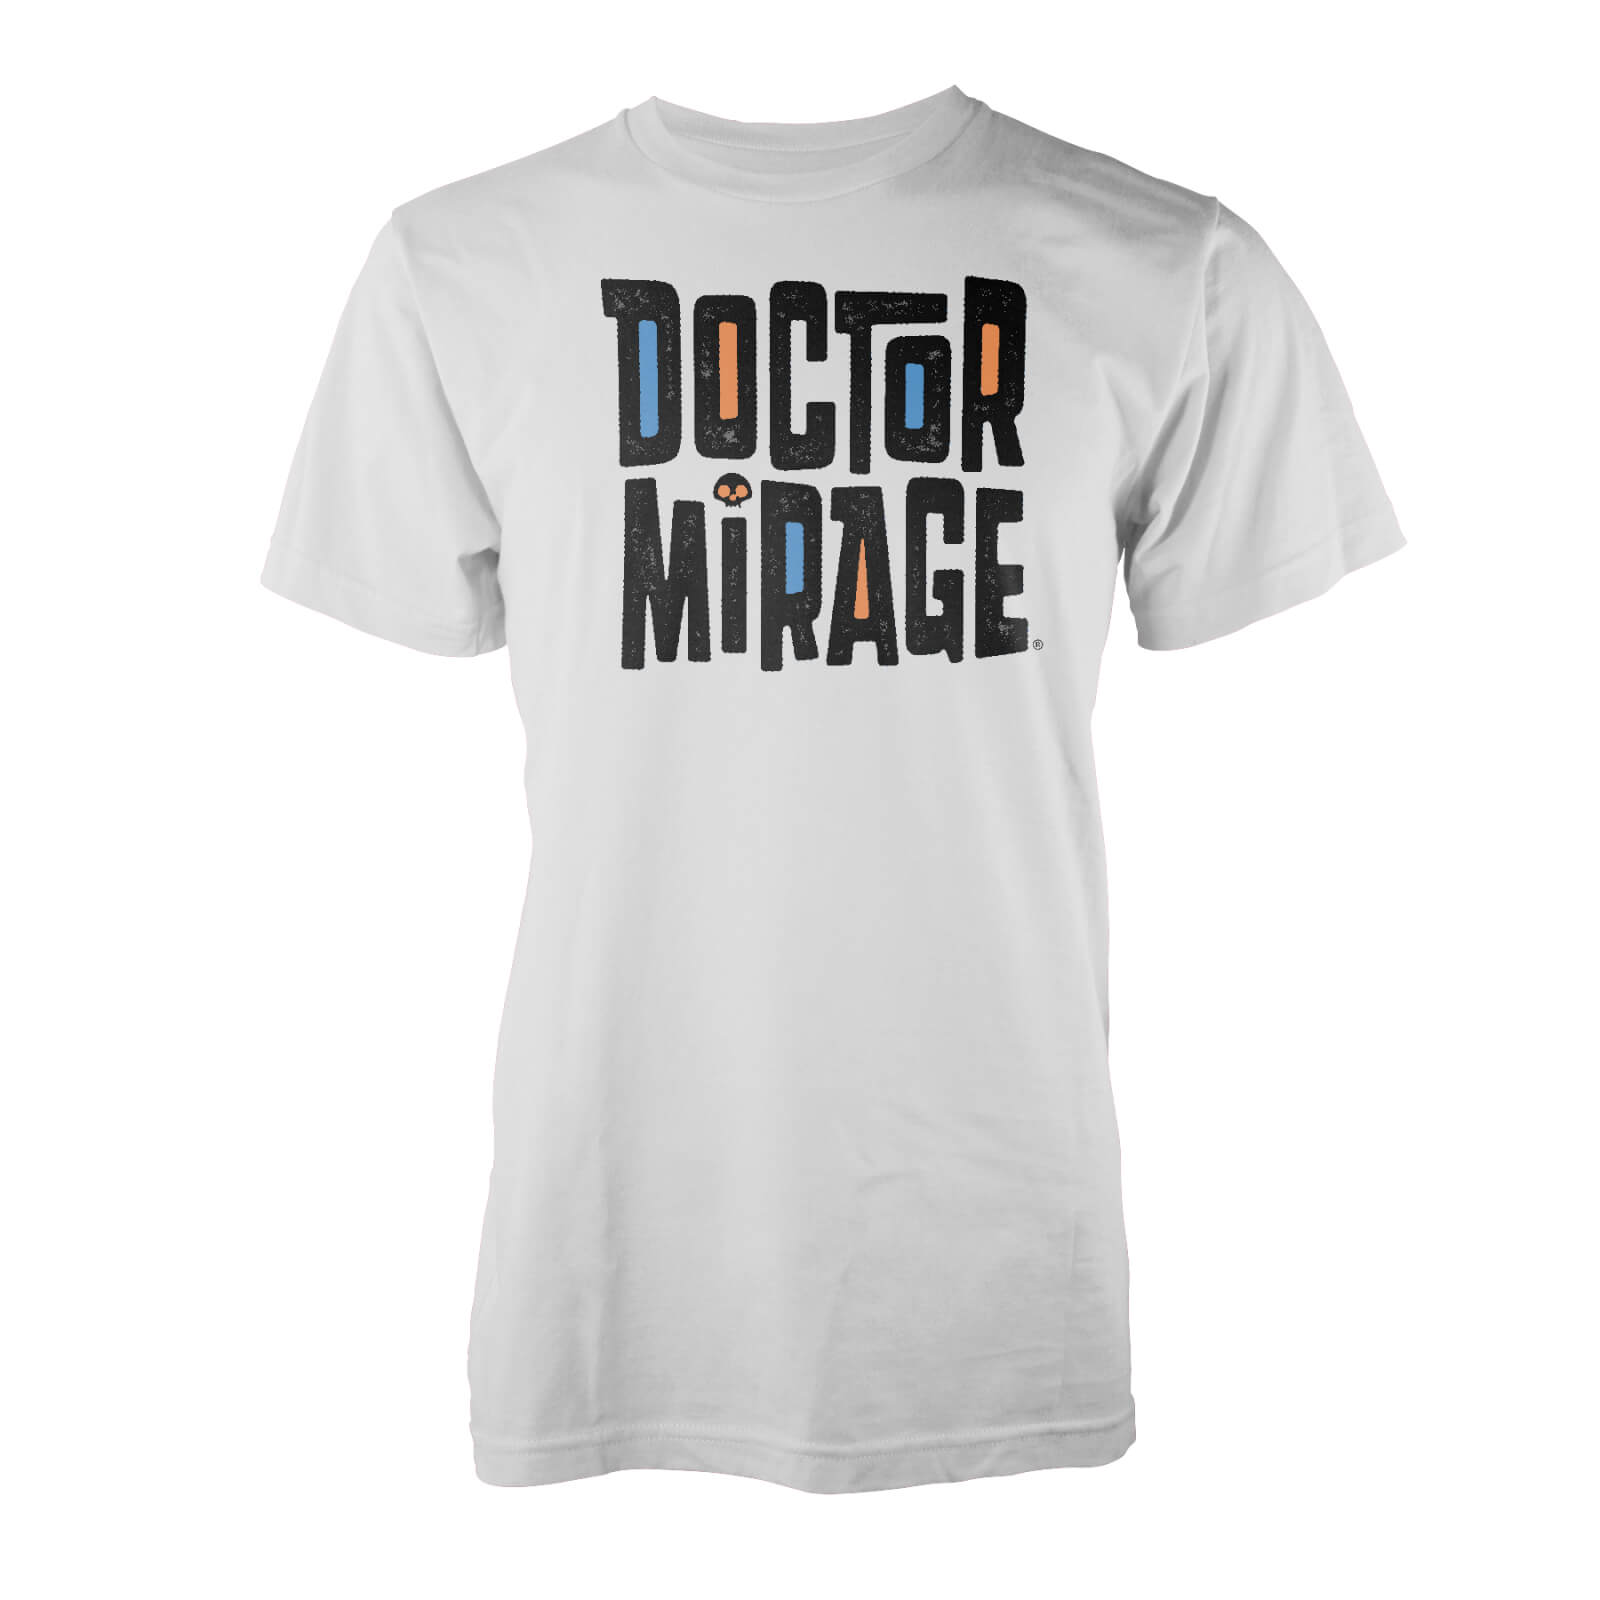 Valiant Comics Doctor Mirage T-Shirt - White - S - White